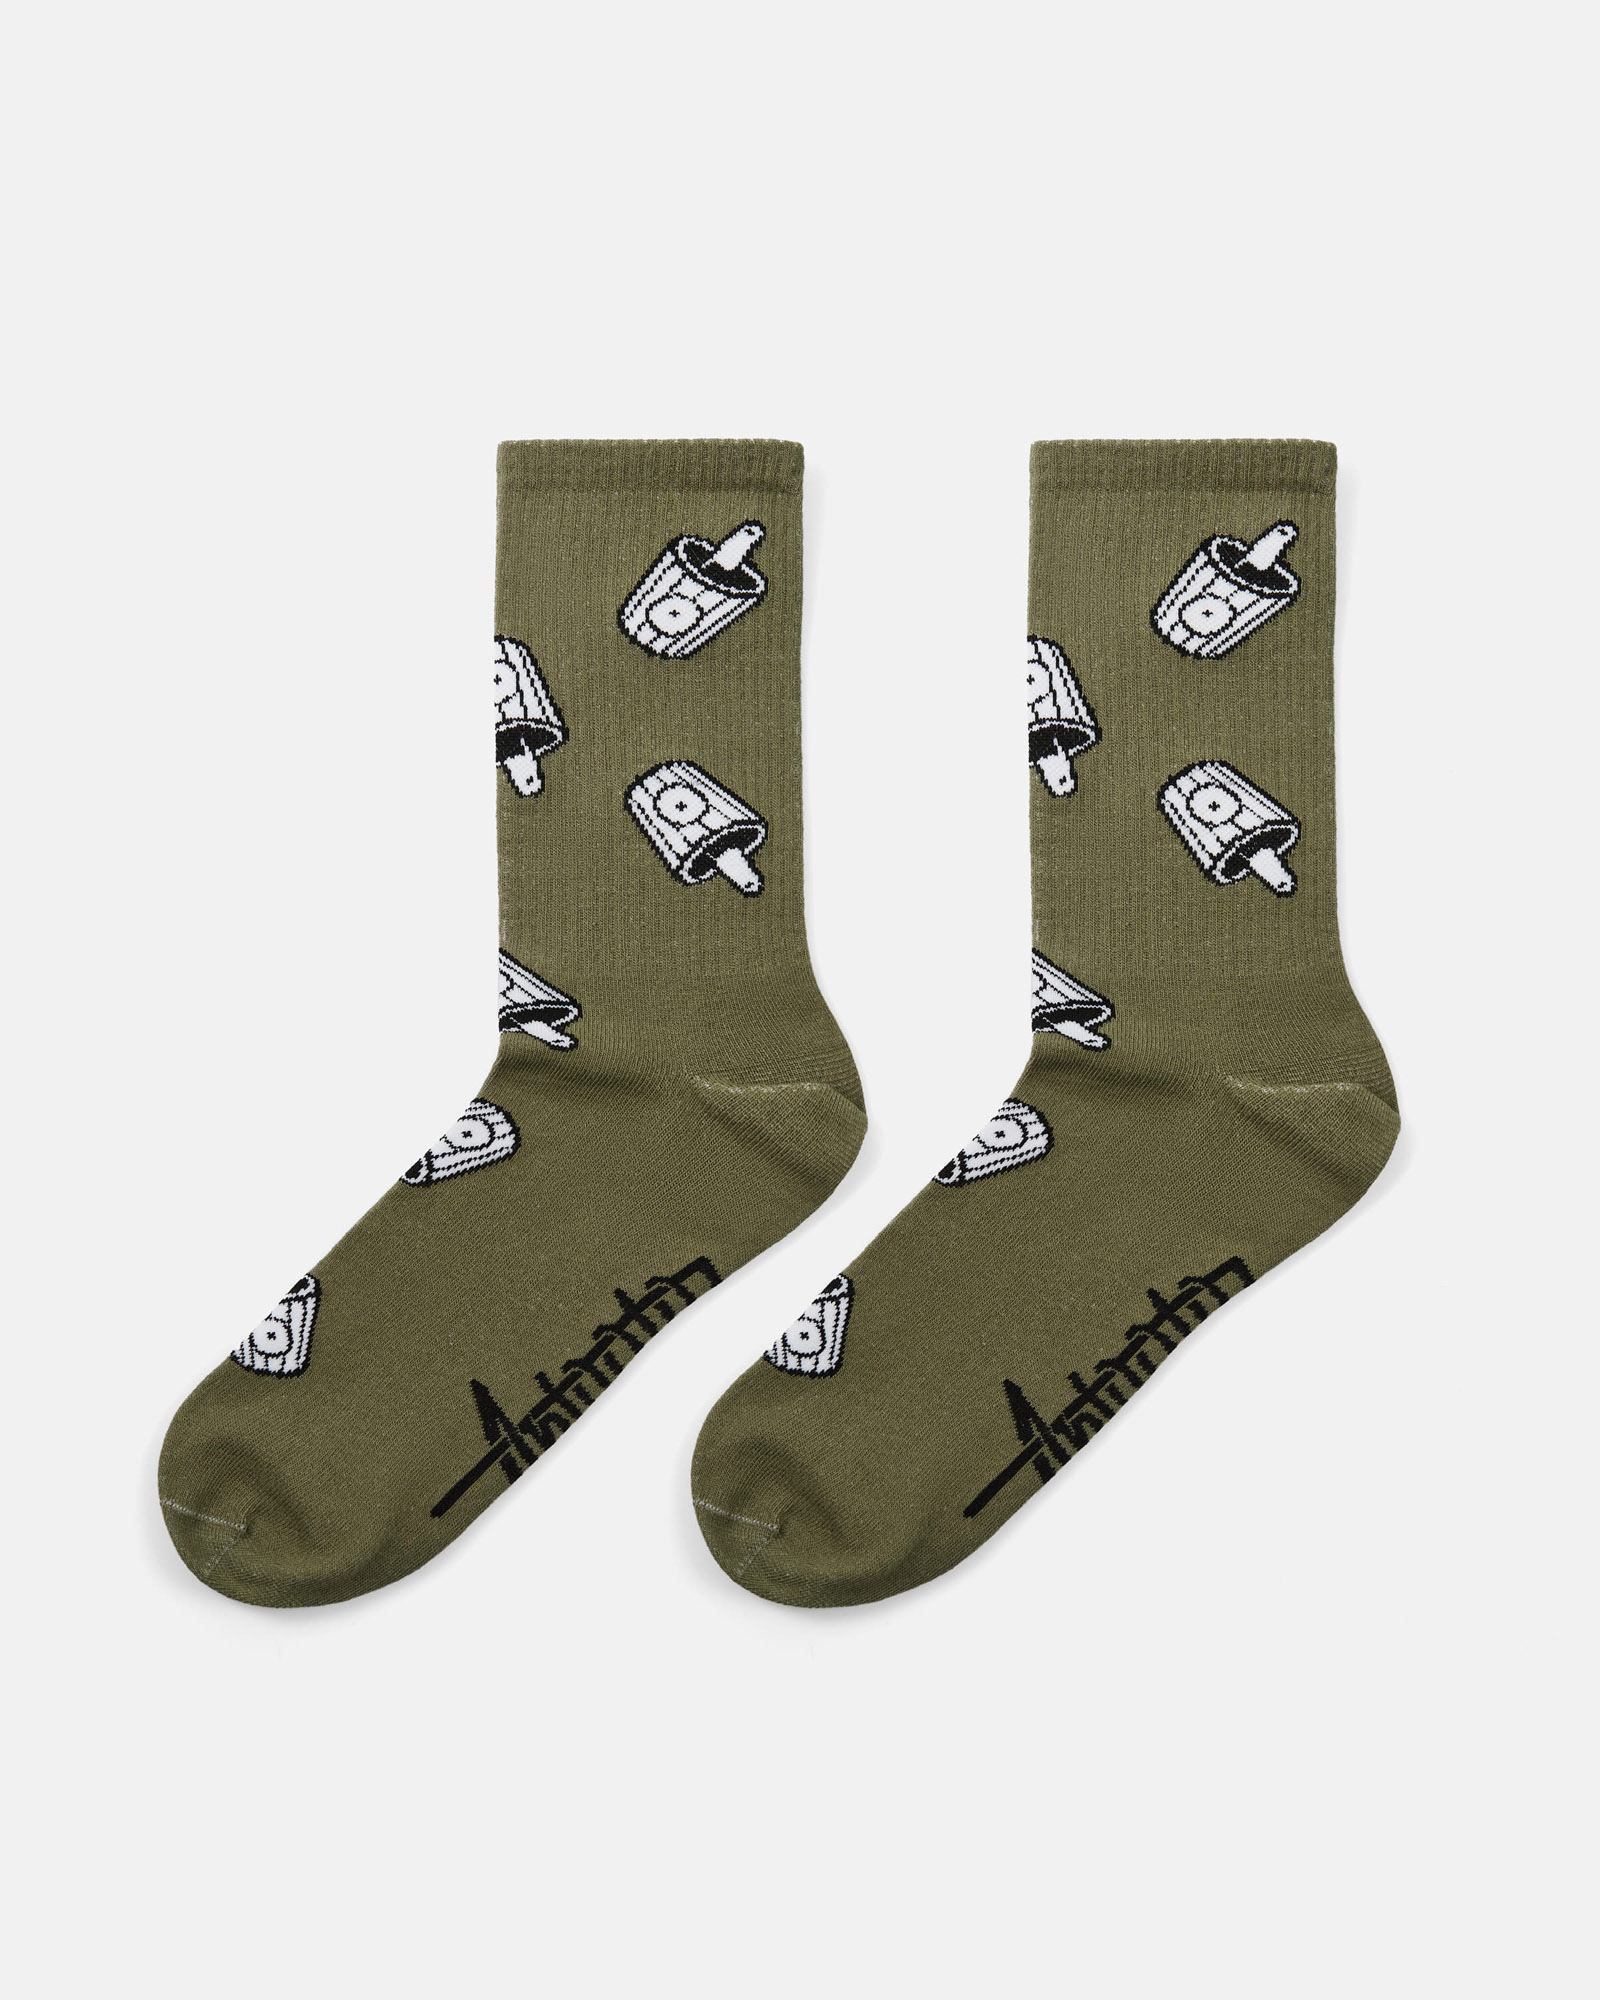 Носки Anteater Socks - фото 4